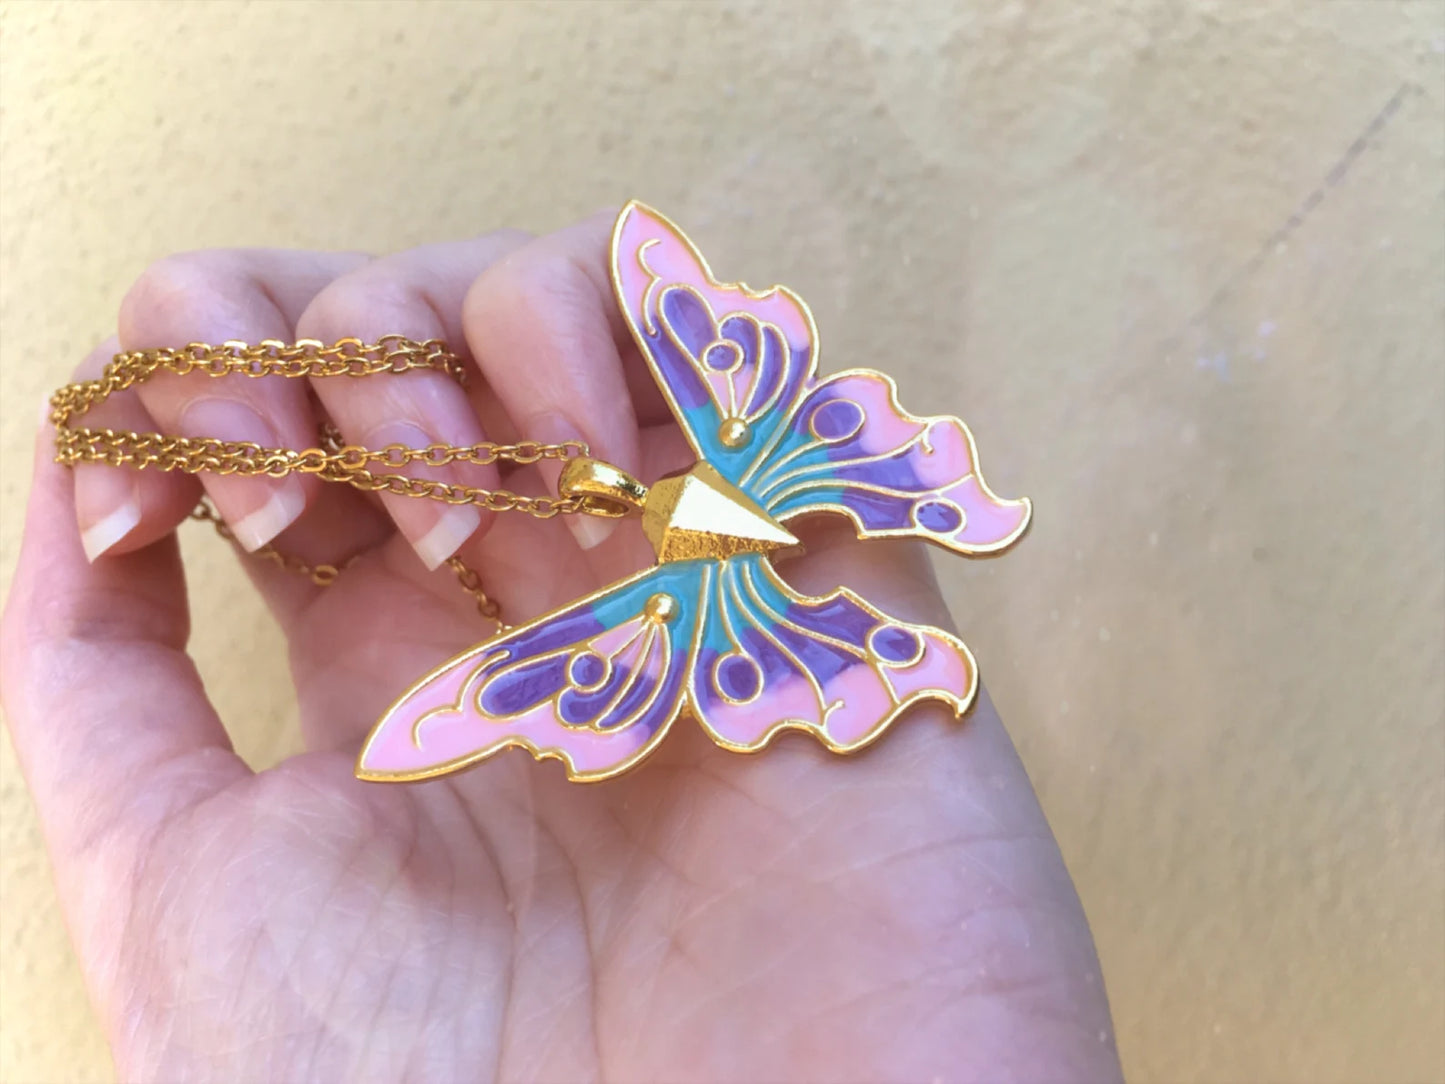 Fairytopia Elina Mariposa Fairy Butterfly Necklace - Large Version